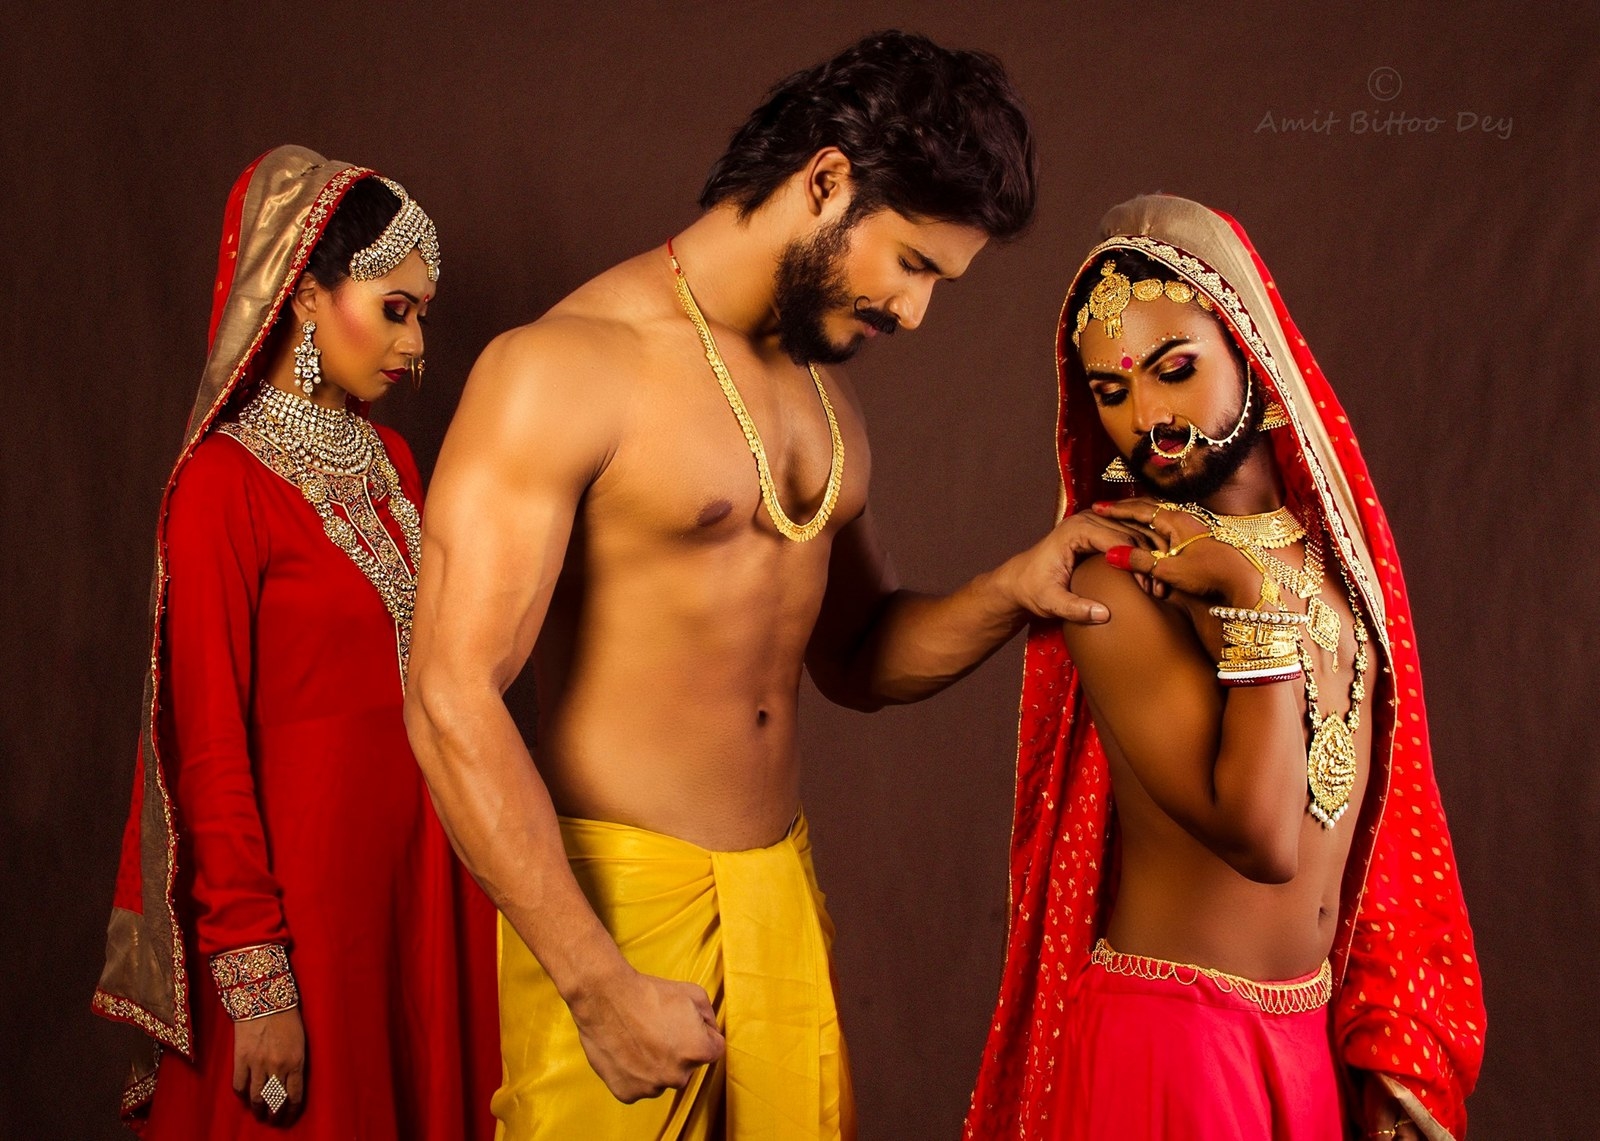 Рыжий транссексуал развлекается с мужчиной индусом 